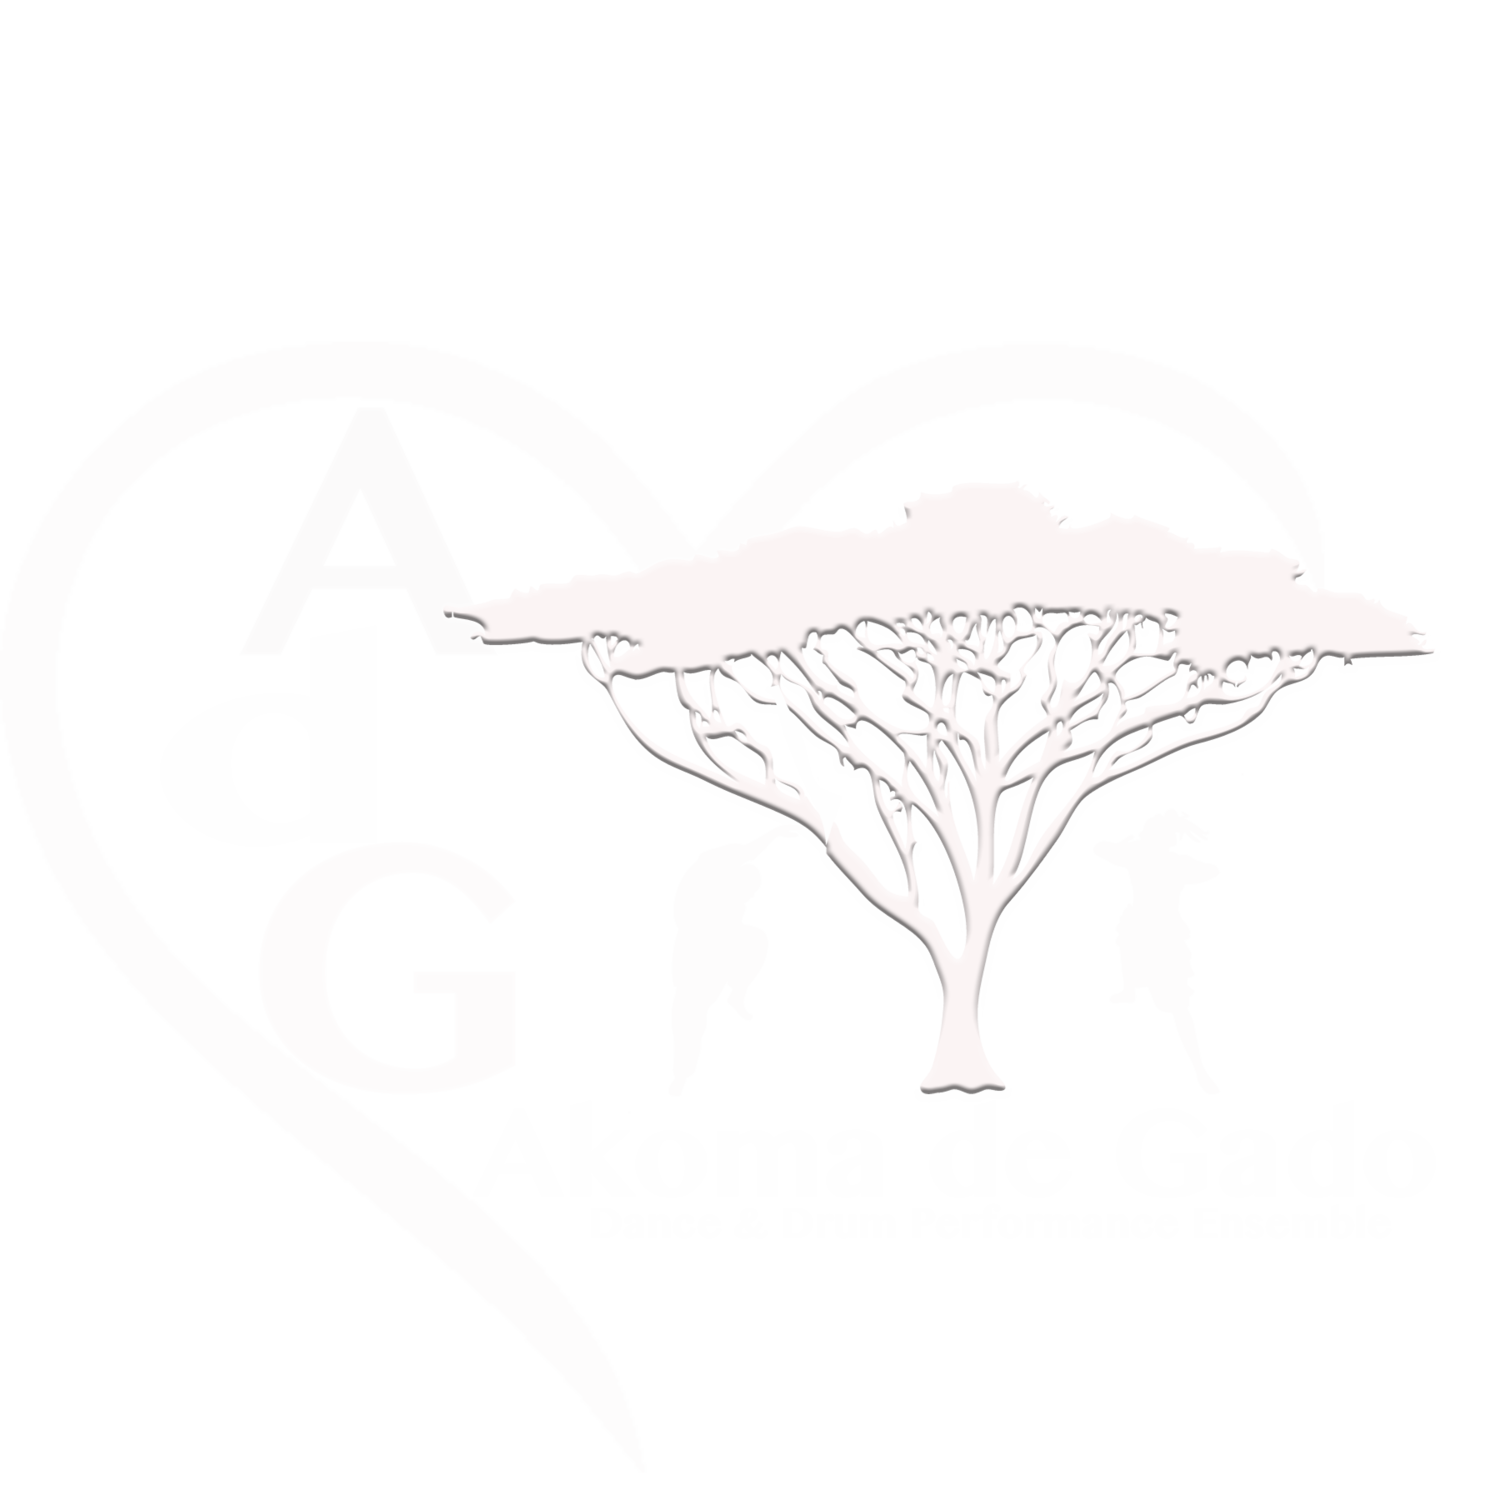 Akoma de Gado Dance & Drum Performance Ensemble